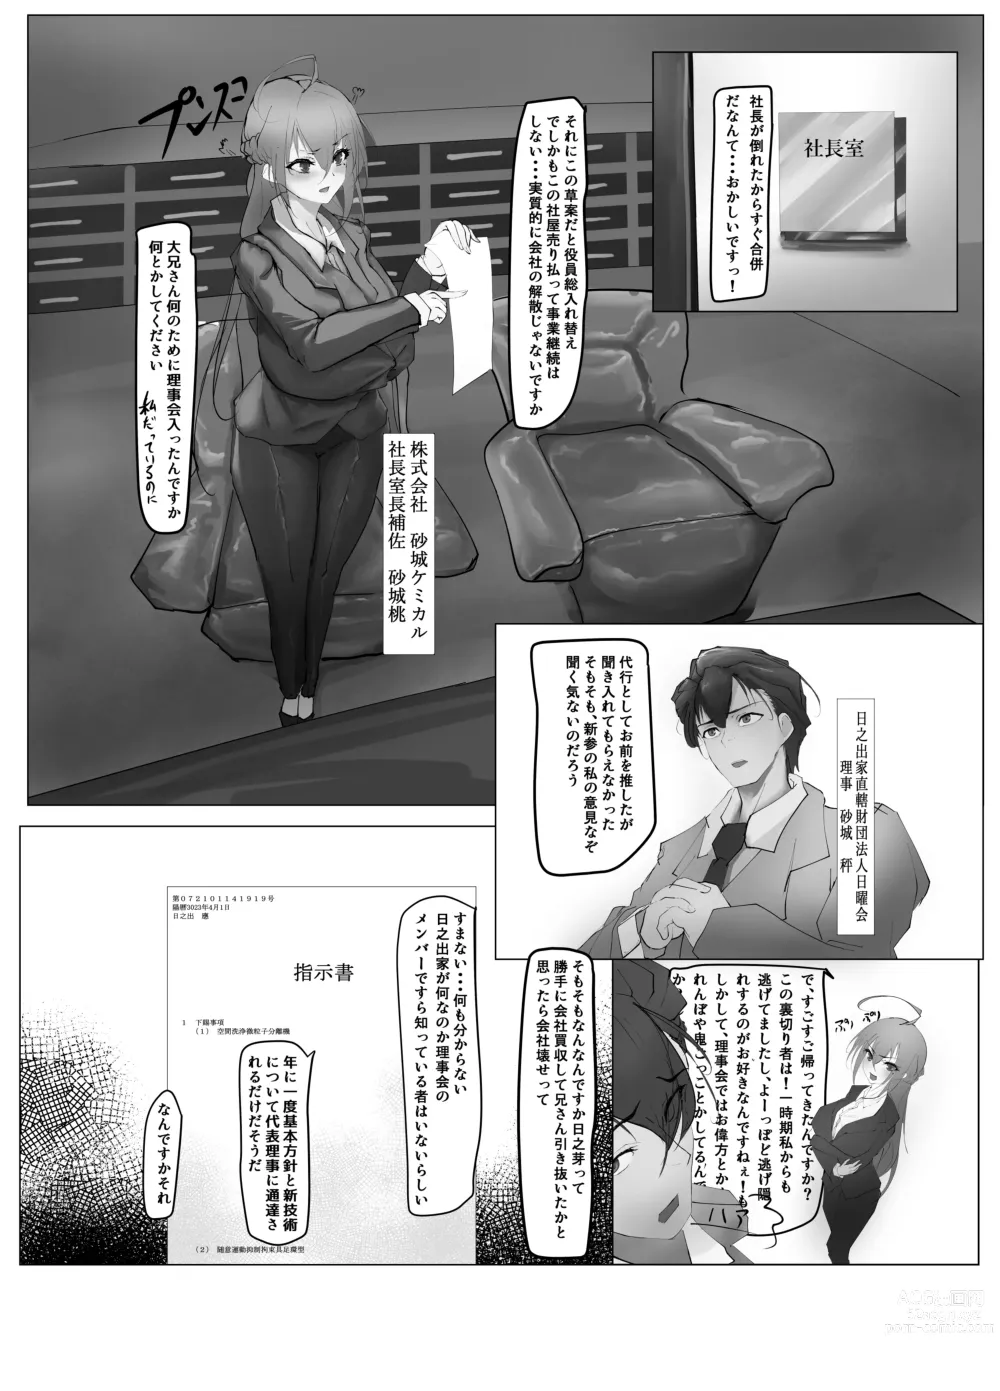 Page 7 of doujinshi Atarashii Kazoku ga Fuemashita!